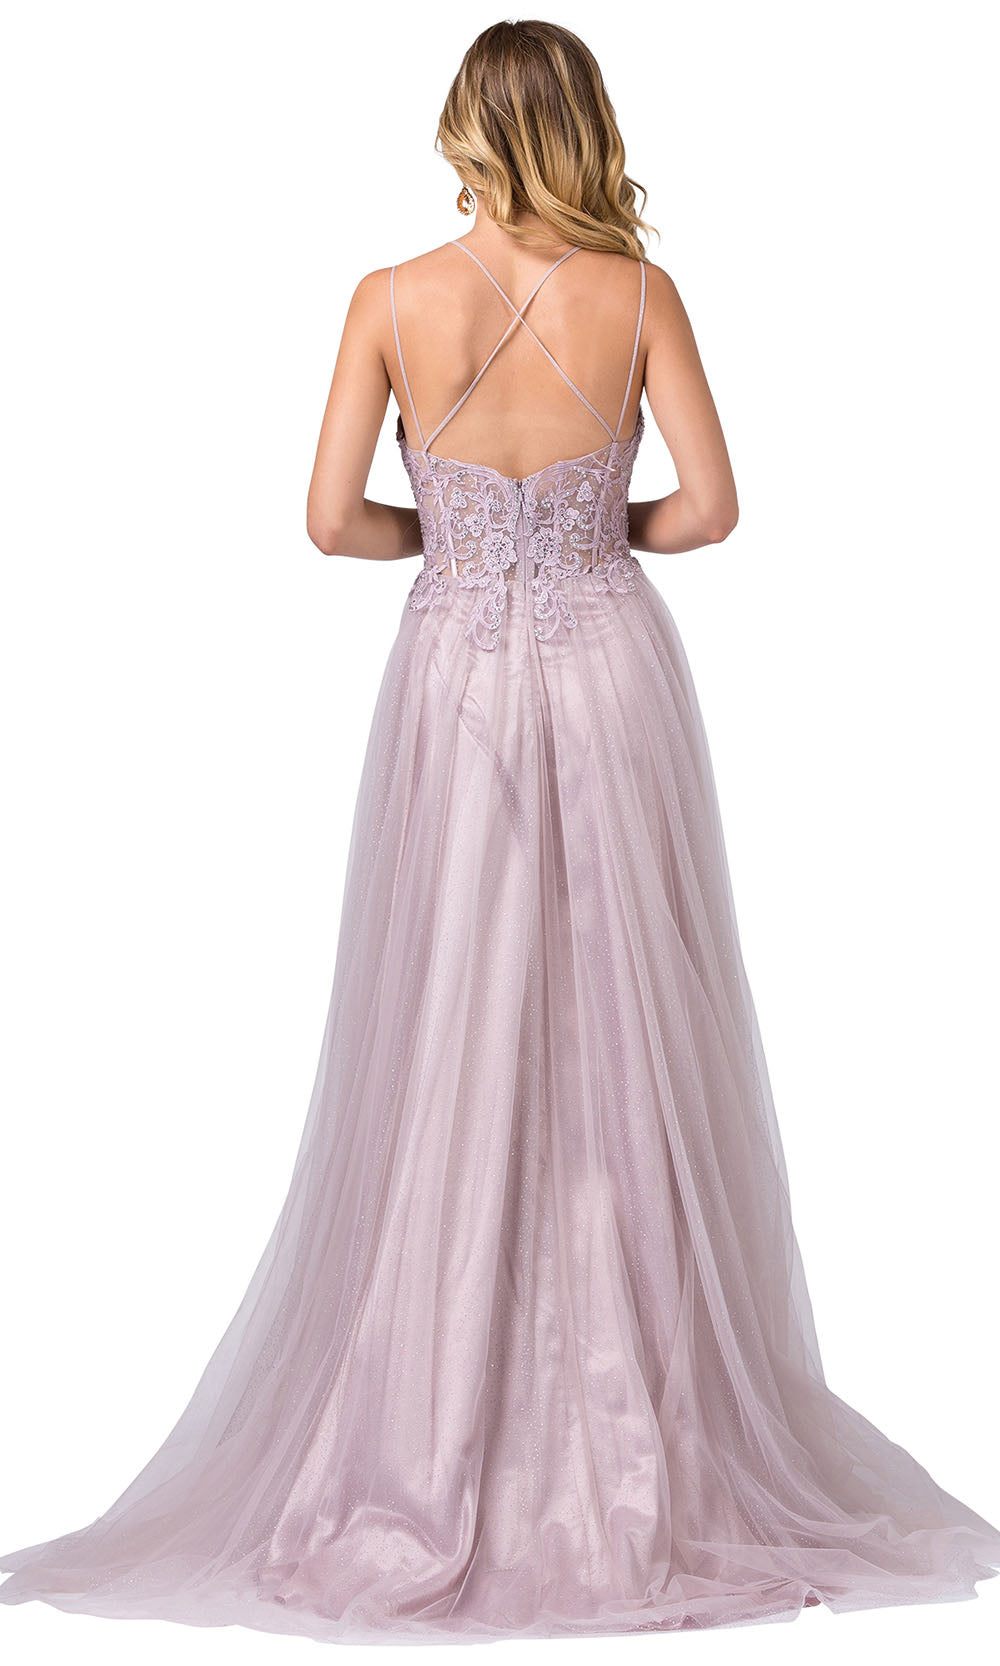 Dancing Queen - 2645 Bead Corset A-Line Tulle Dress In Purple